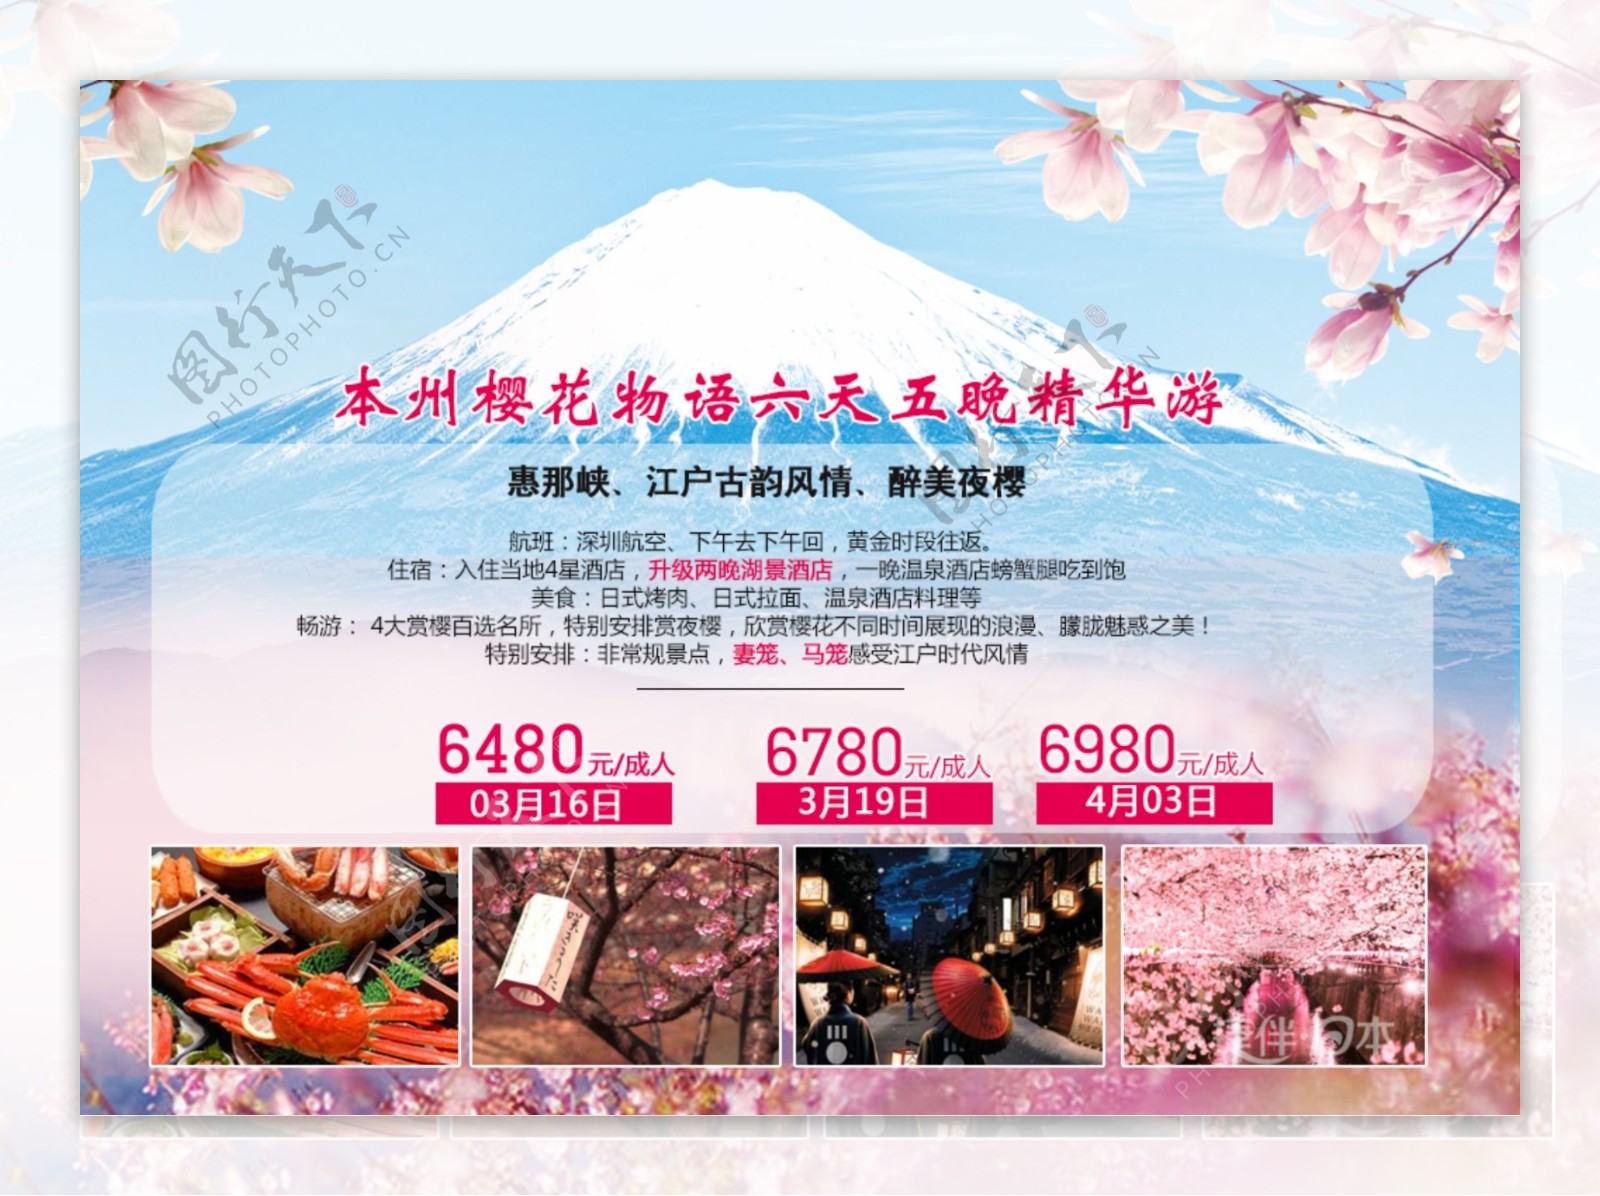 日本旅游海报春节赏樱